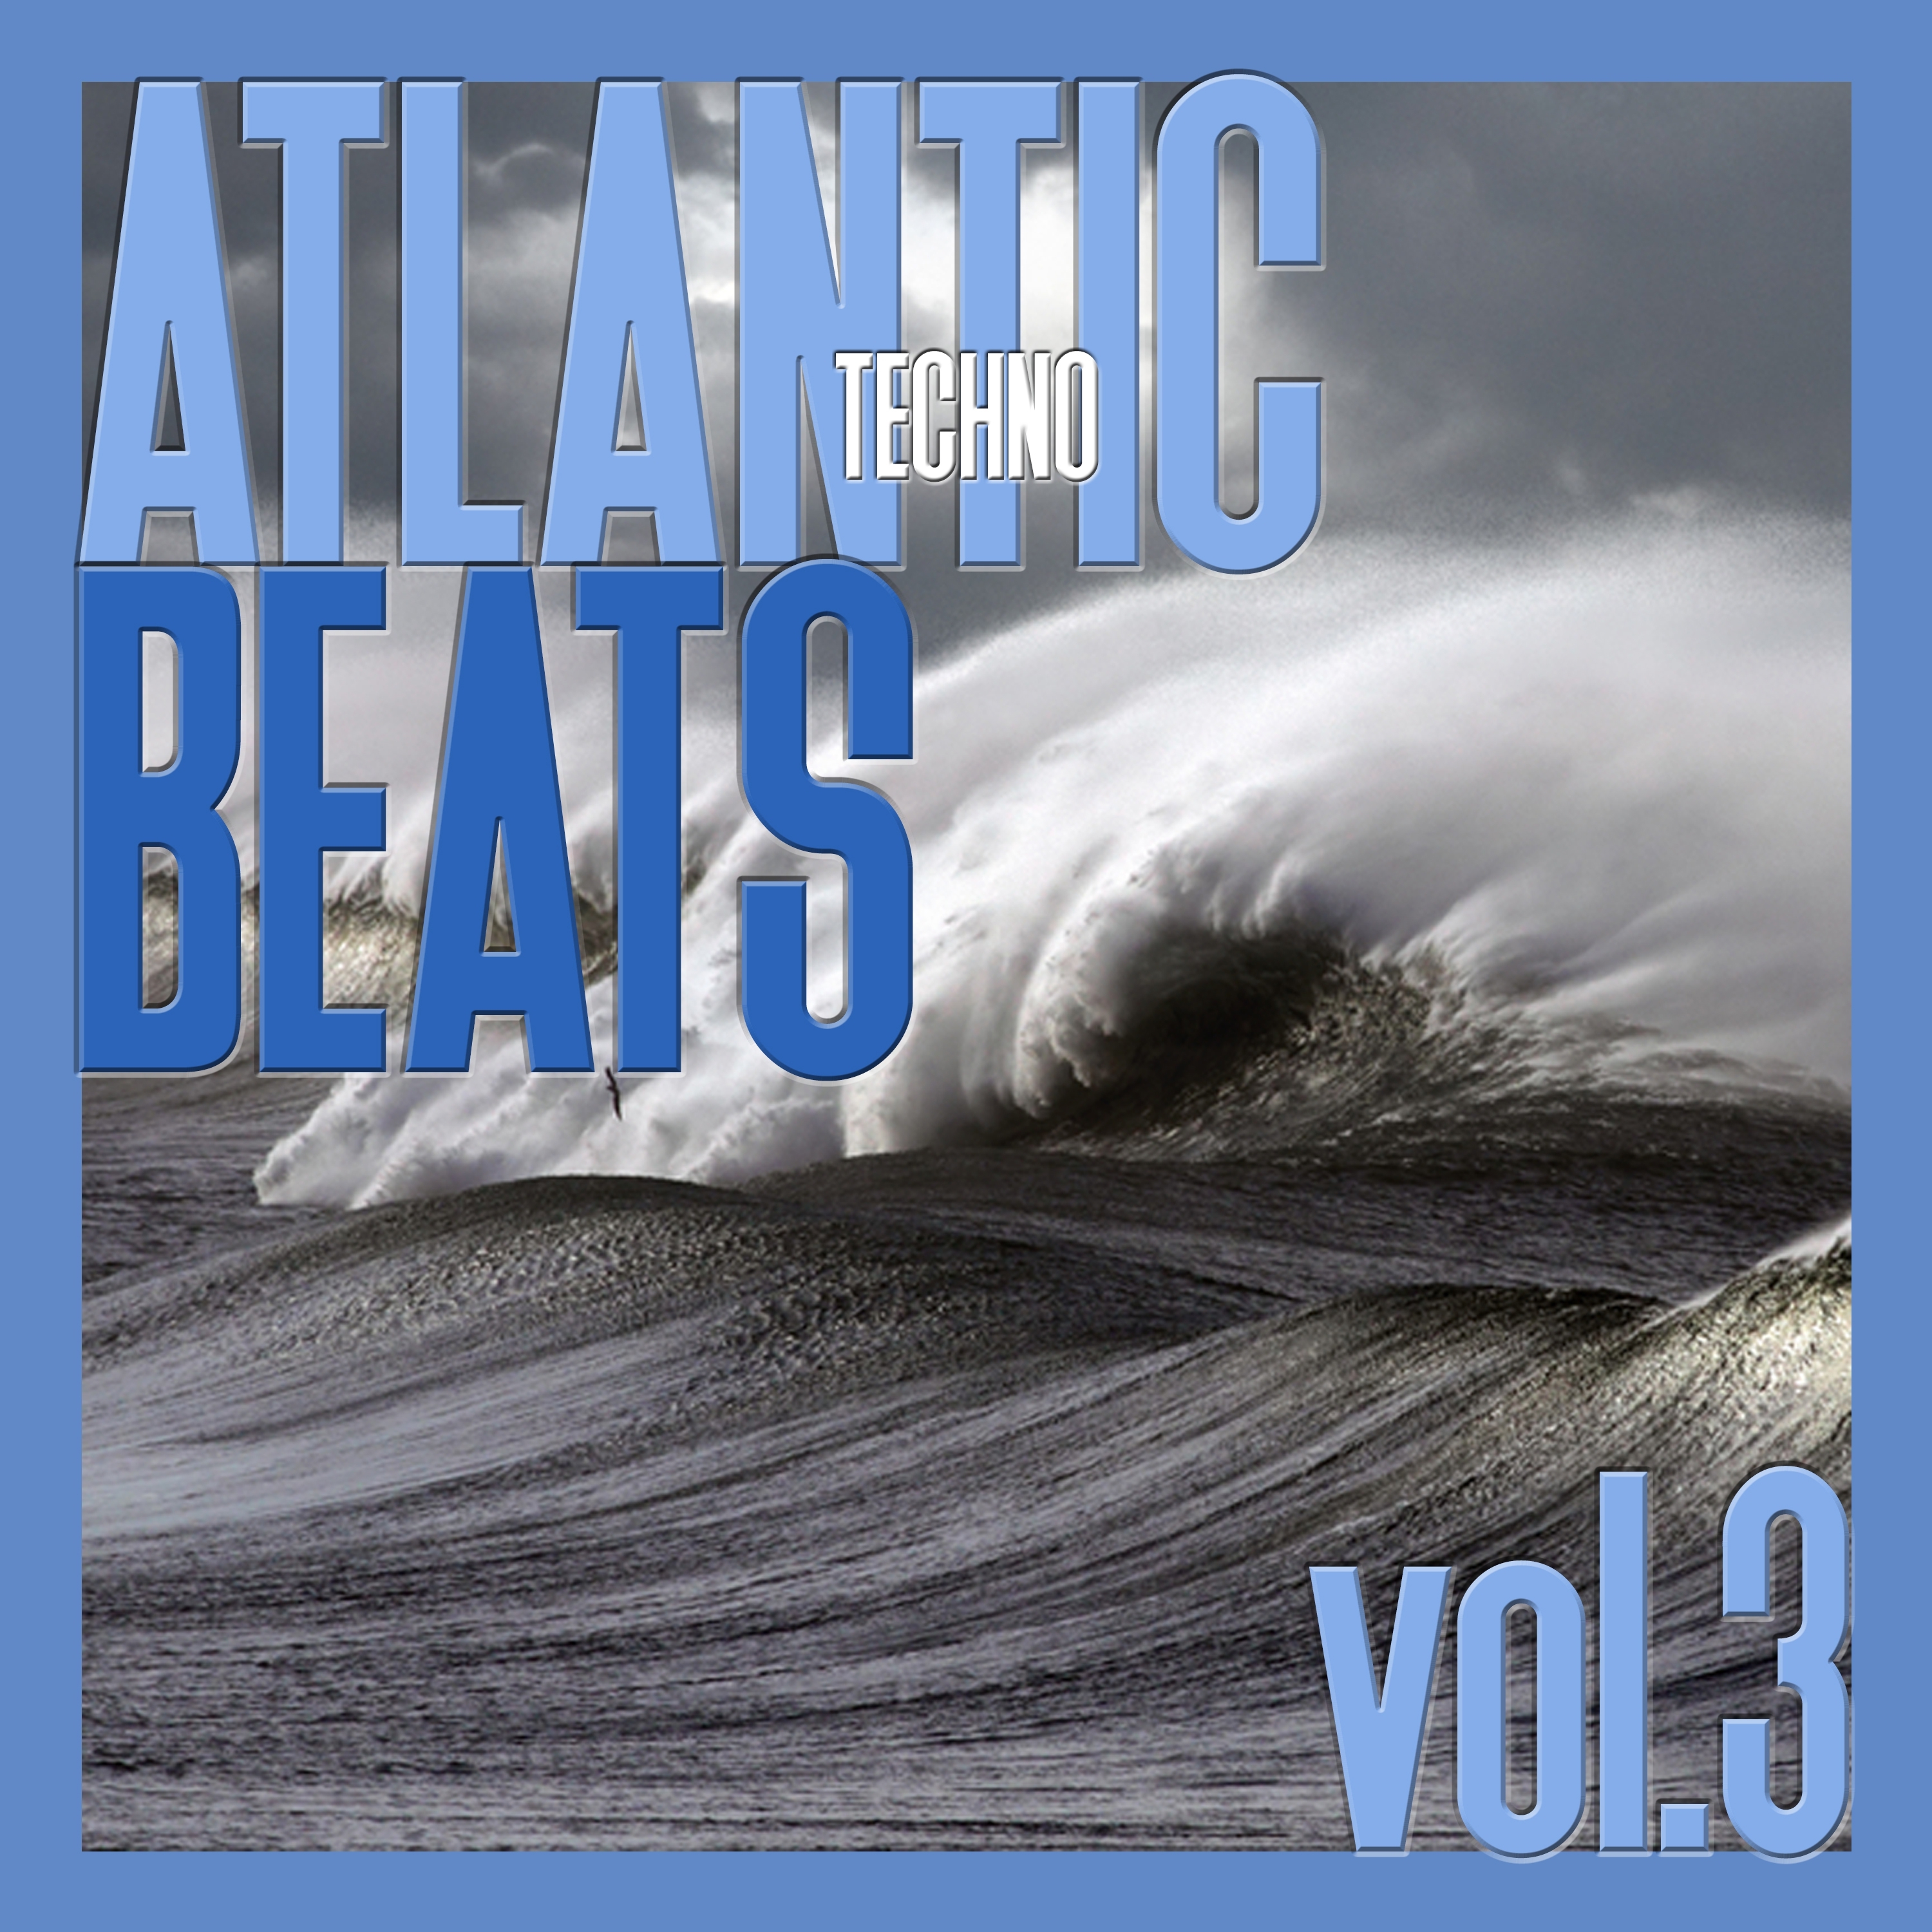 Atlantic Techno Beats, Vol. 3